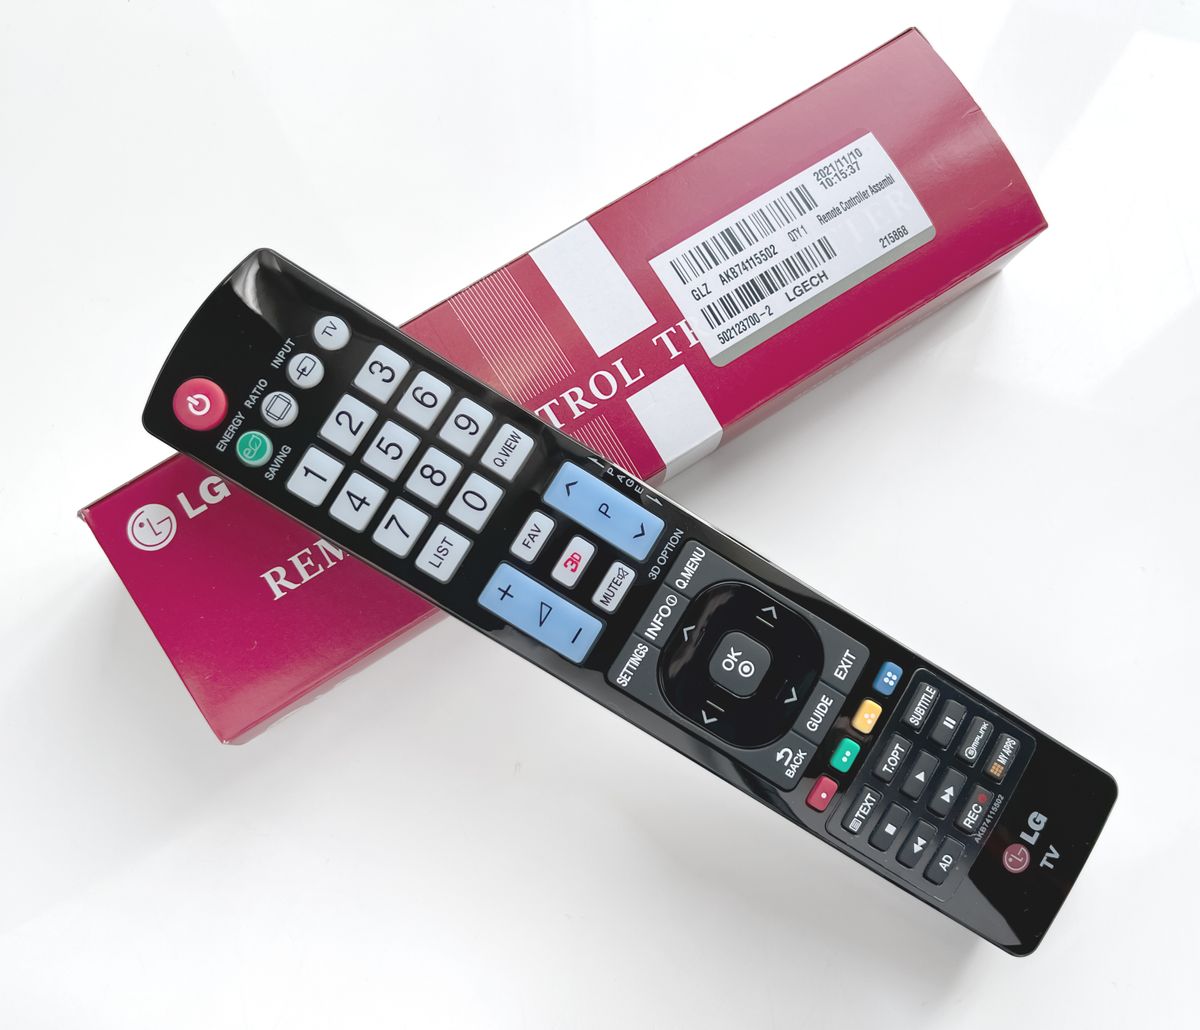 LG 27tq615spz Remote Control: CMB5557 - Remote Controls Shop